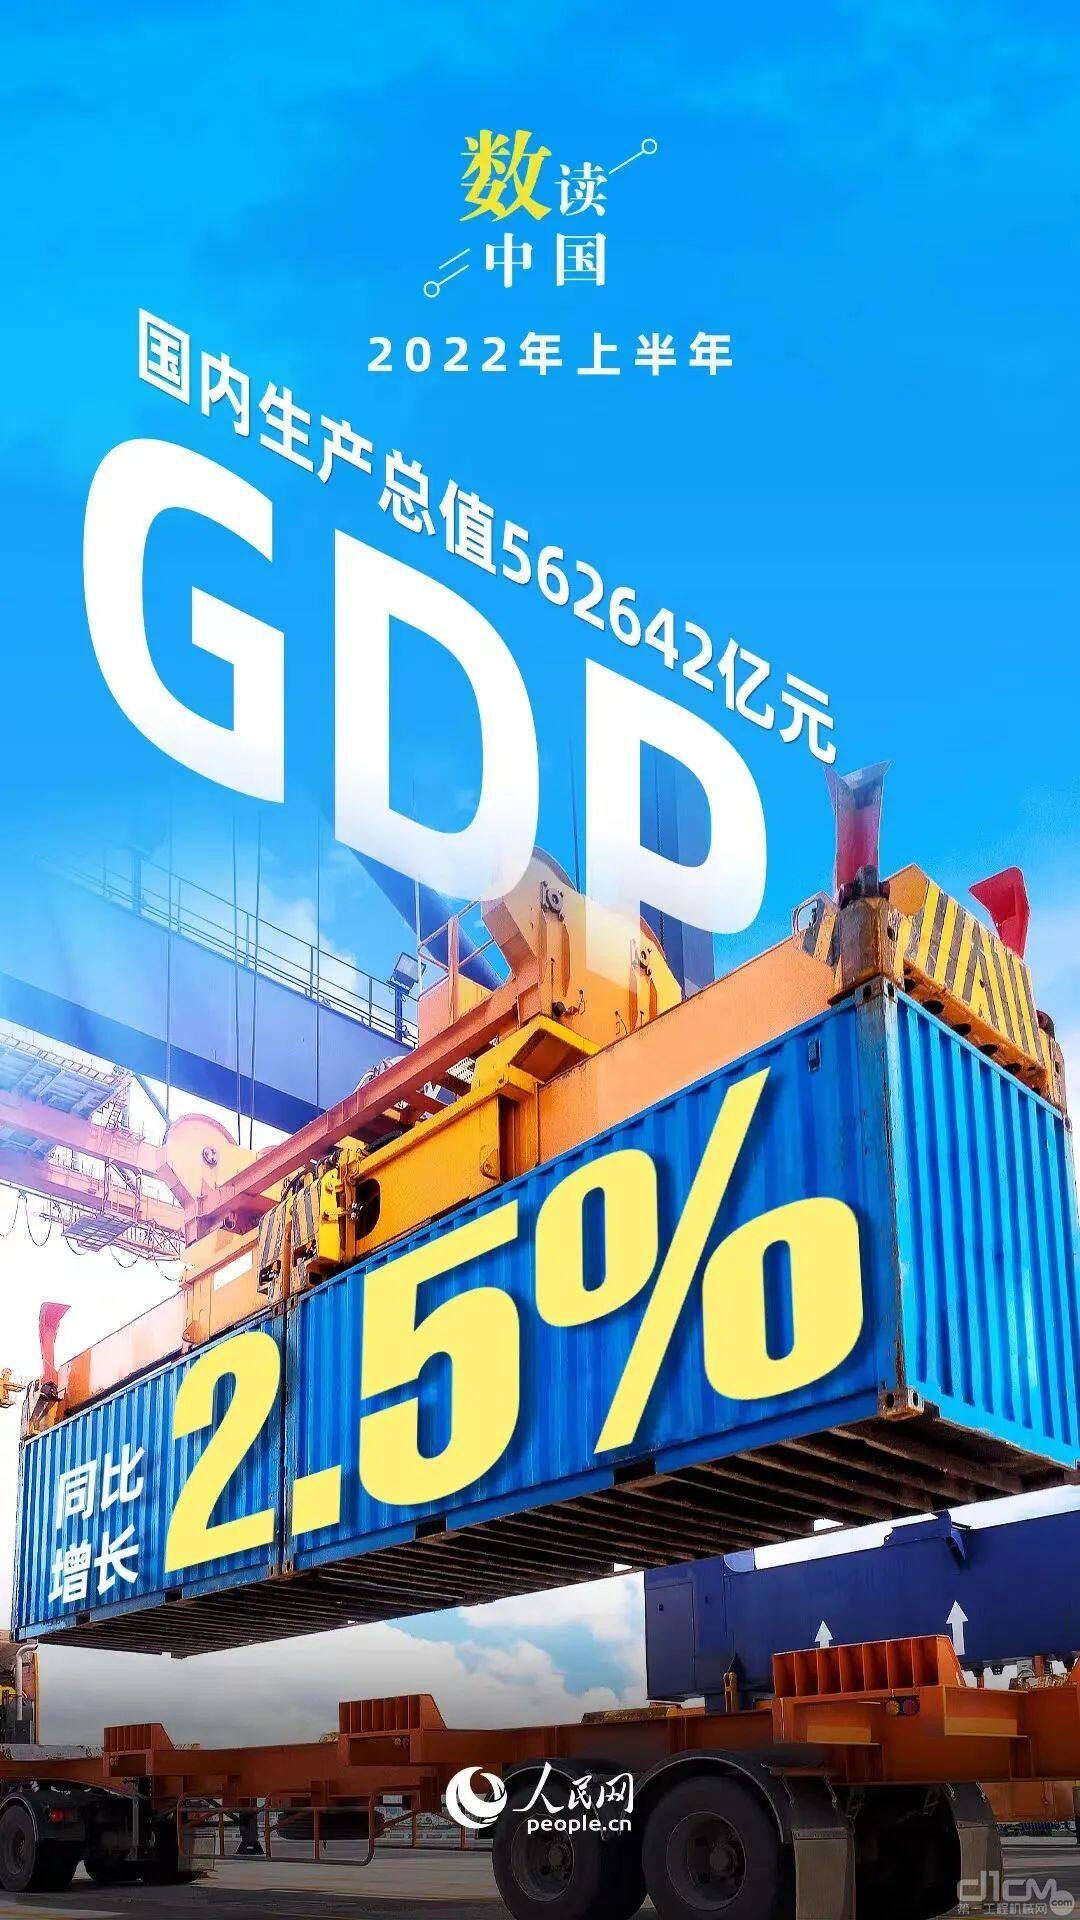 2022年上半年GDP同比增长2.5%